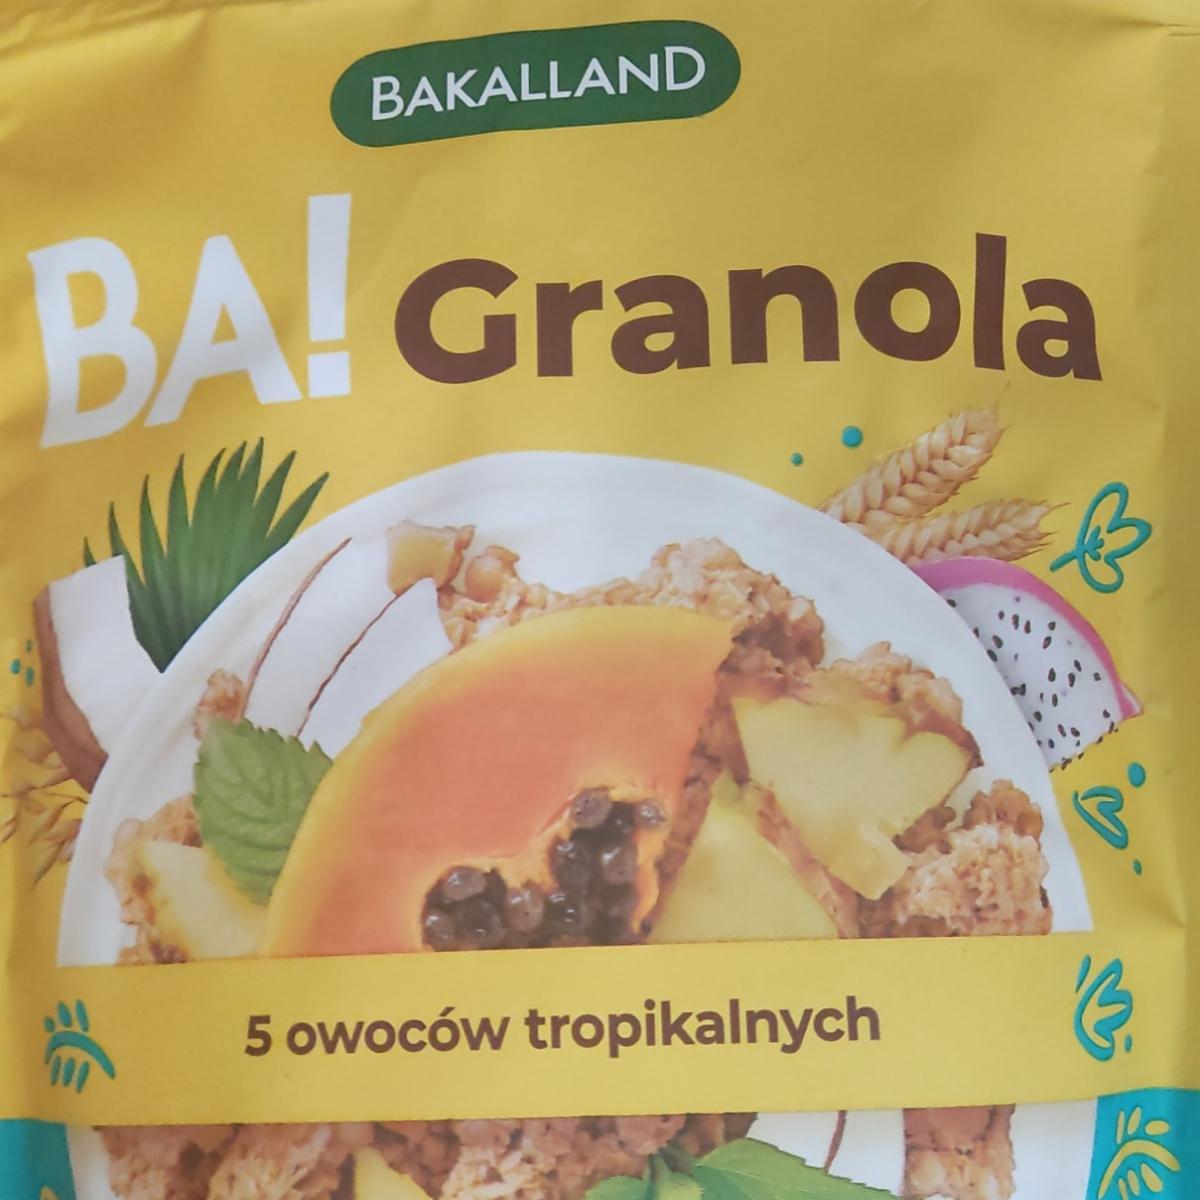 Zdjęcia - Ba! Granola 5 owoców tropikalnych Bakalland